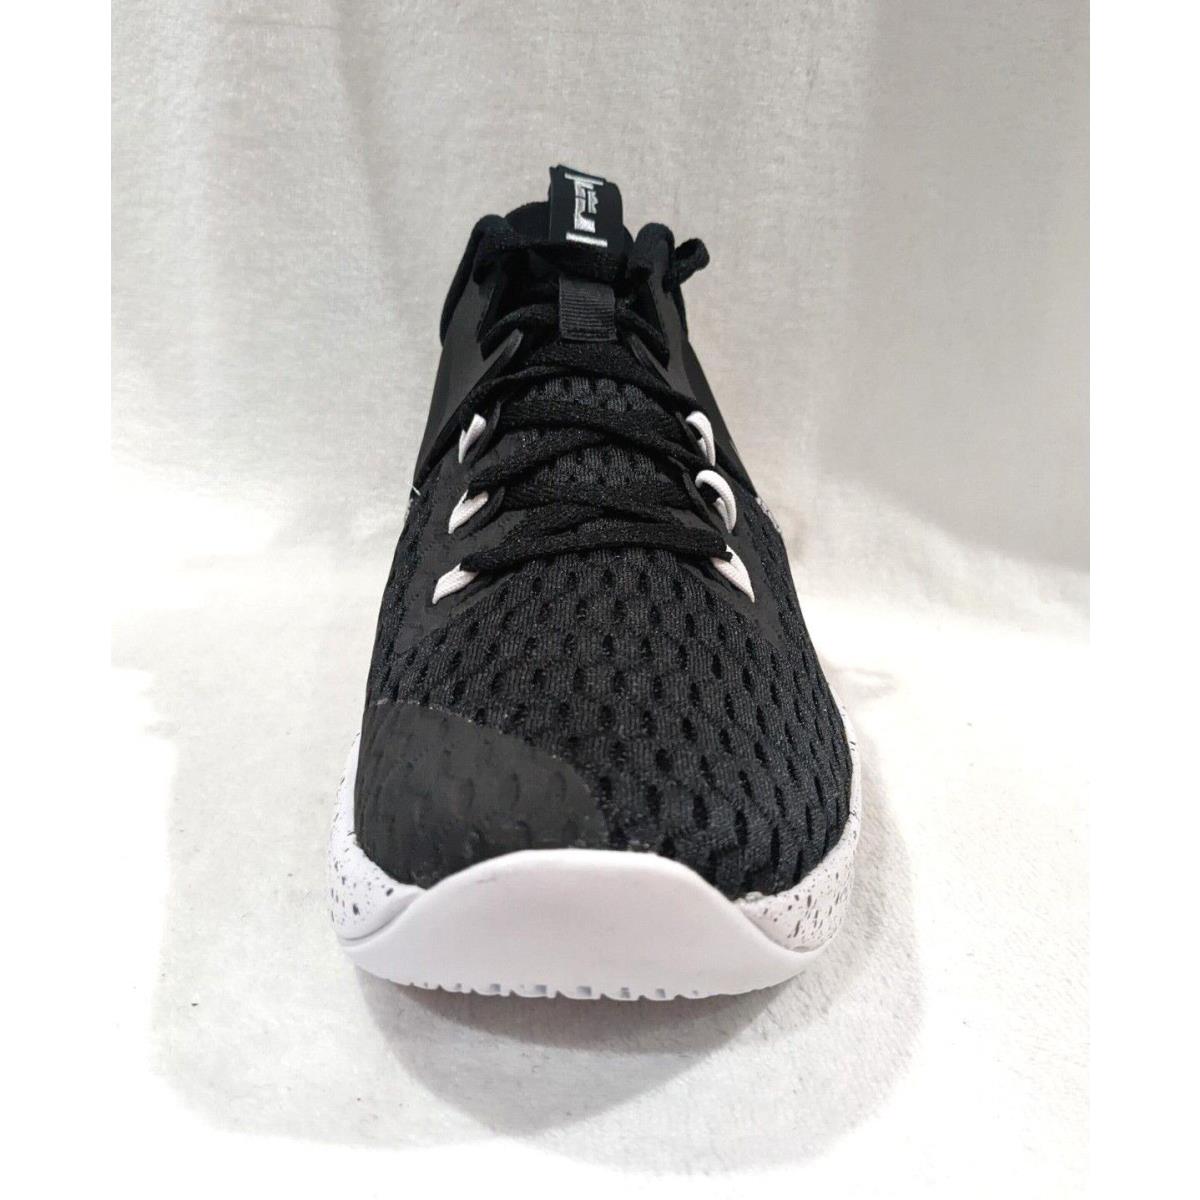 Nike shoes LeBron - Black , Silver , White 3